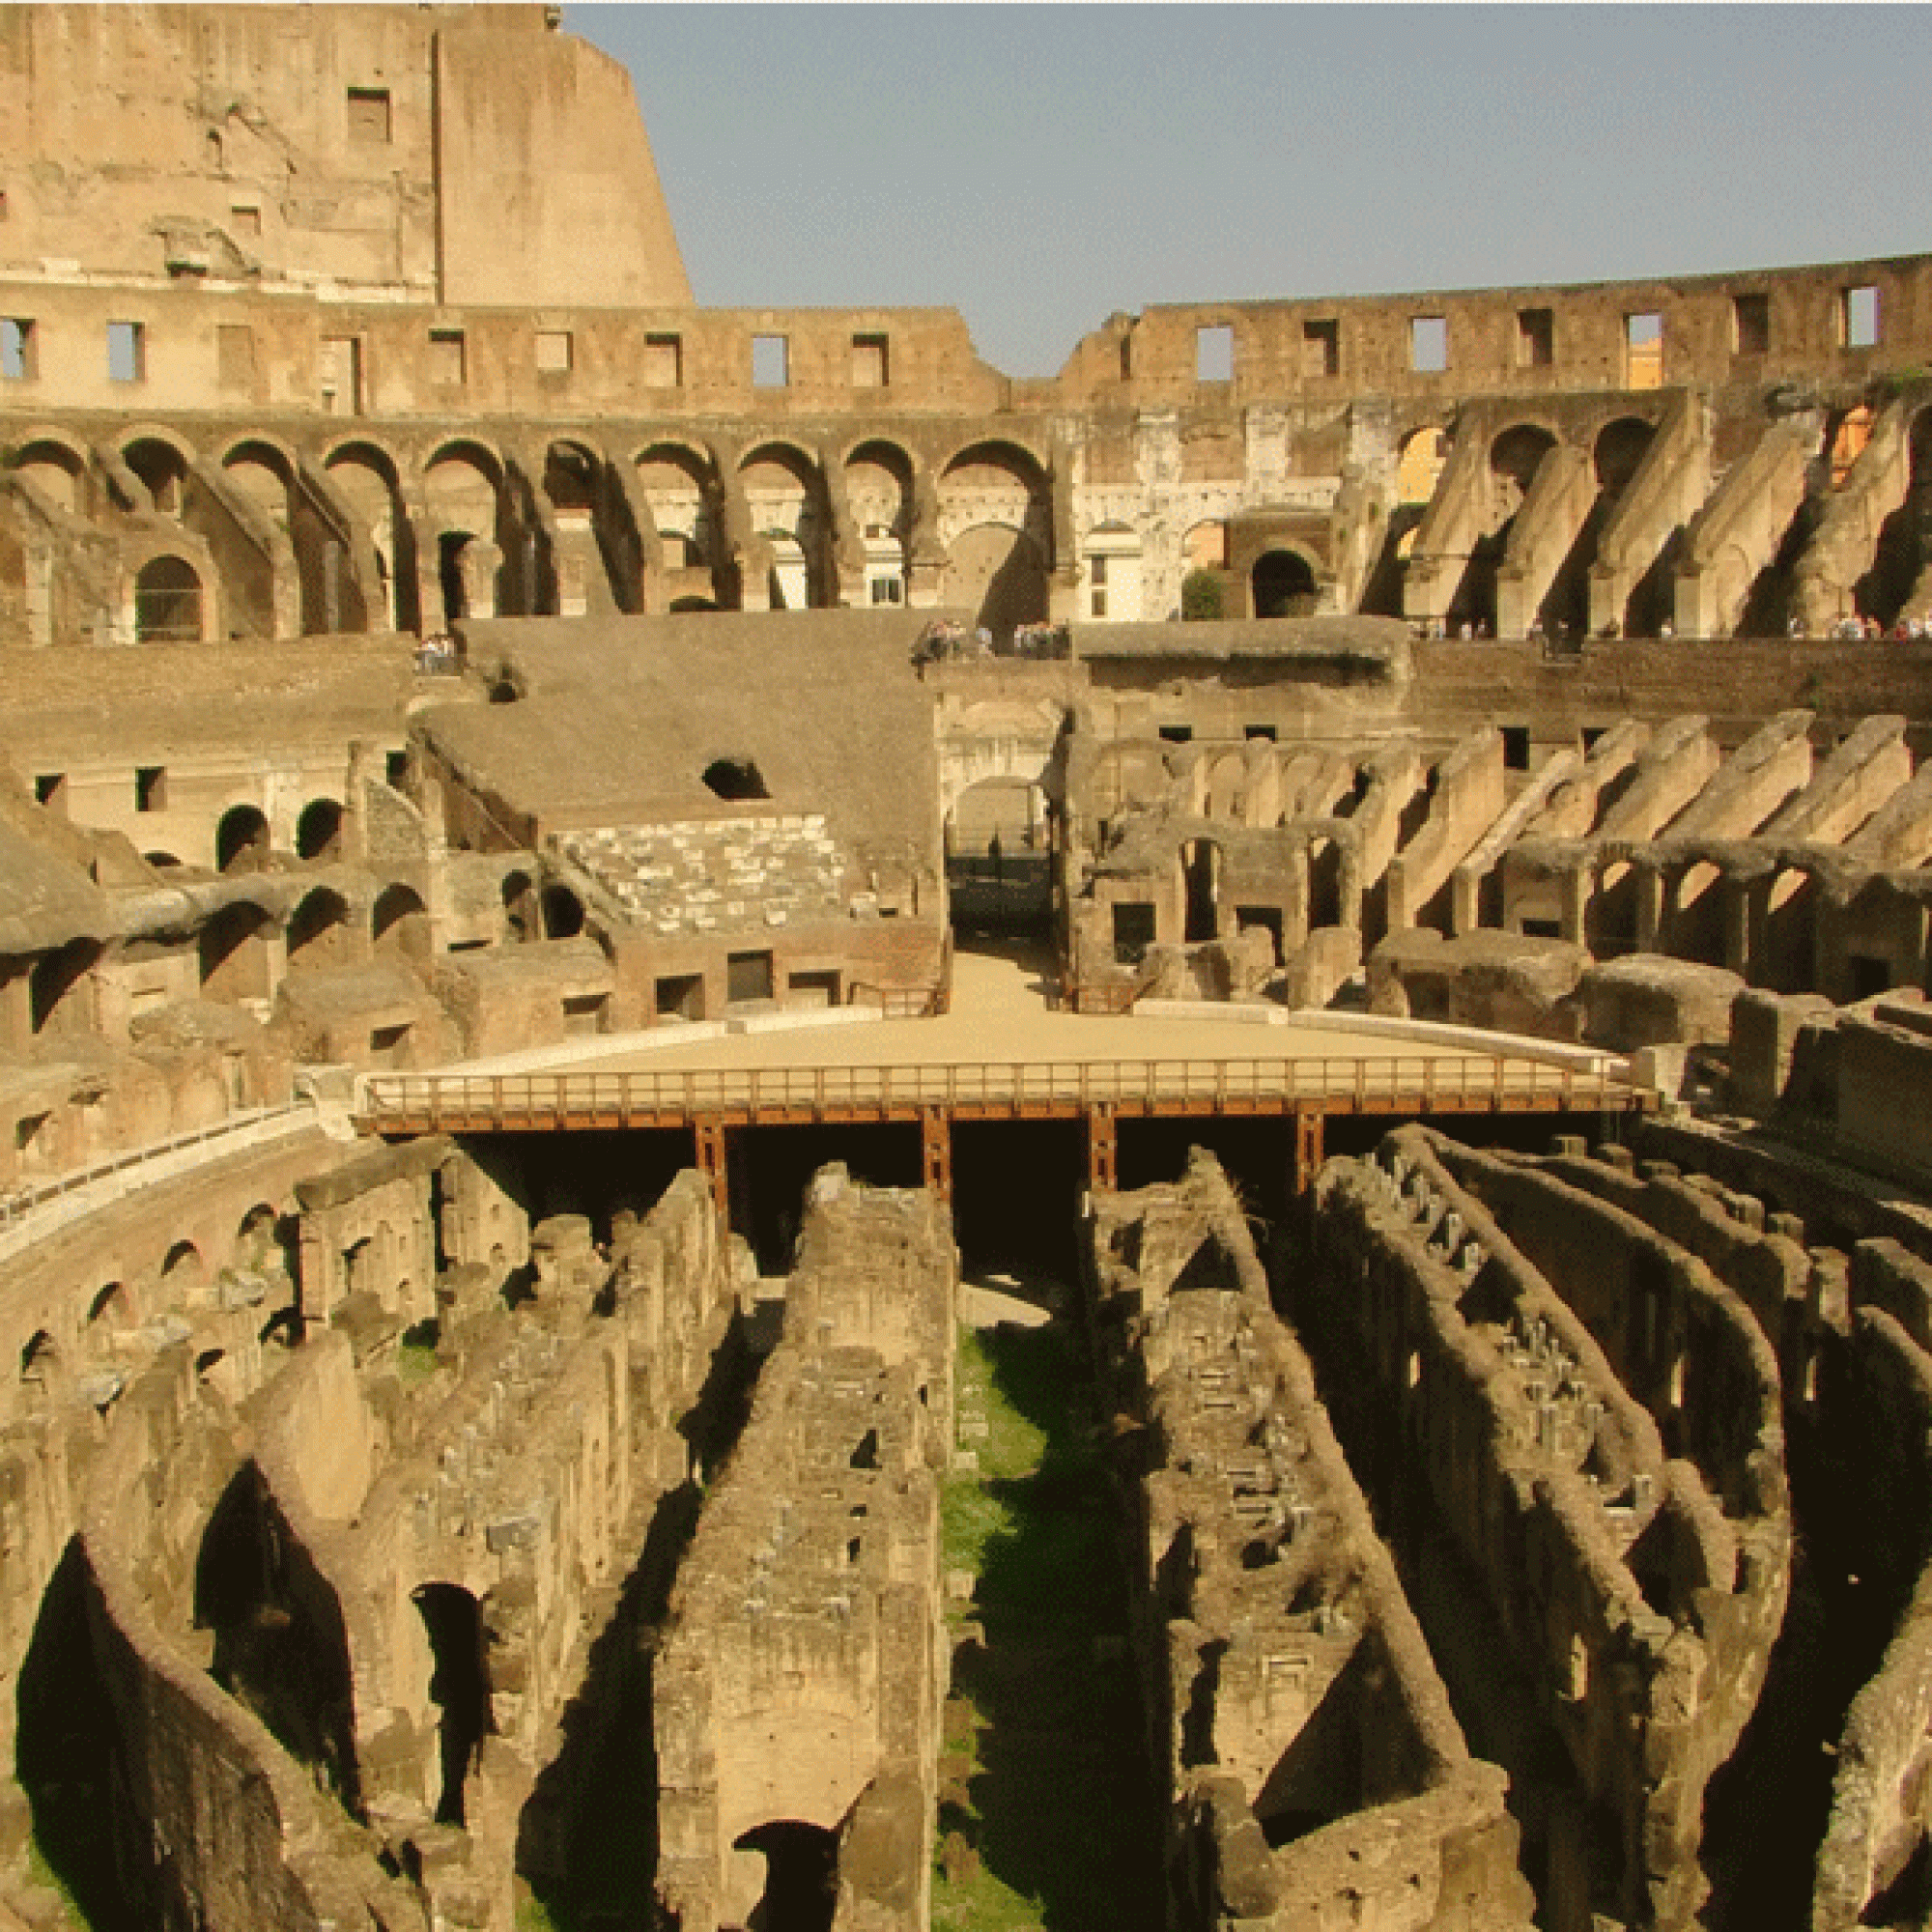 Das Kolosseum von innen (wikimedia.org, Willnkids52, CC)